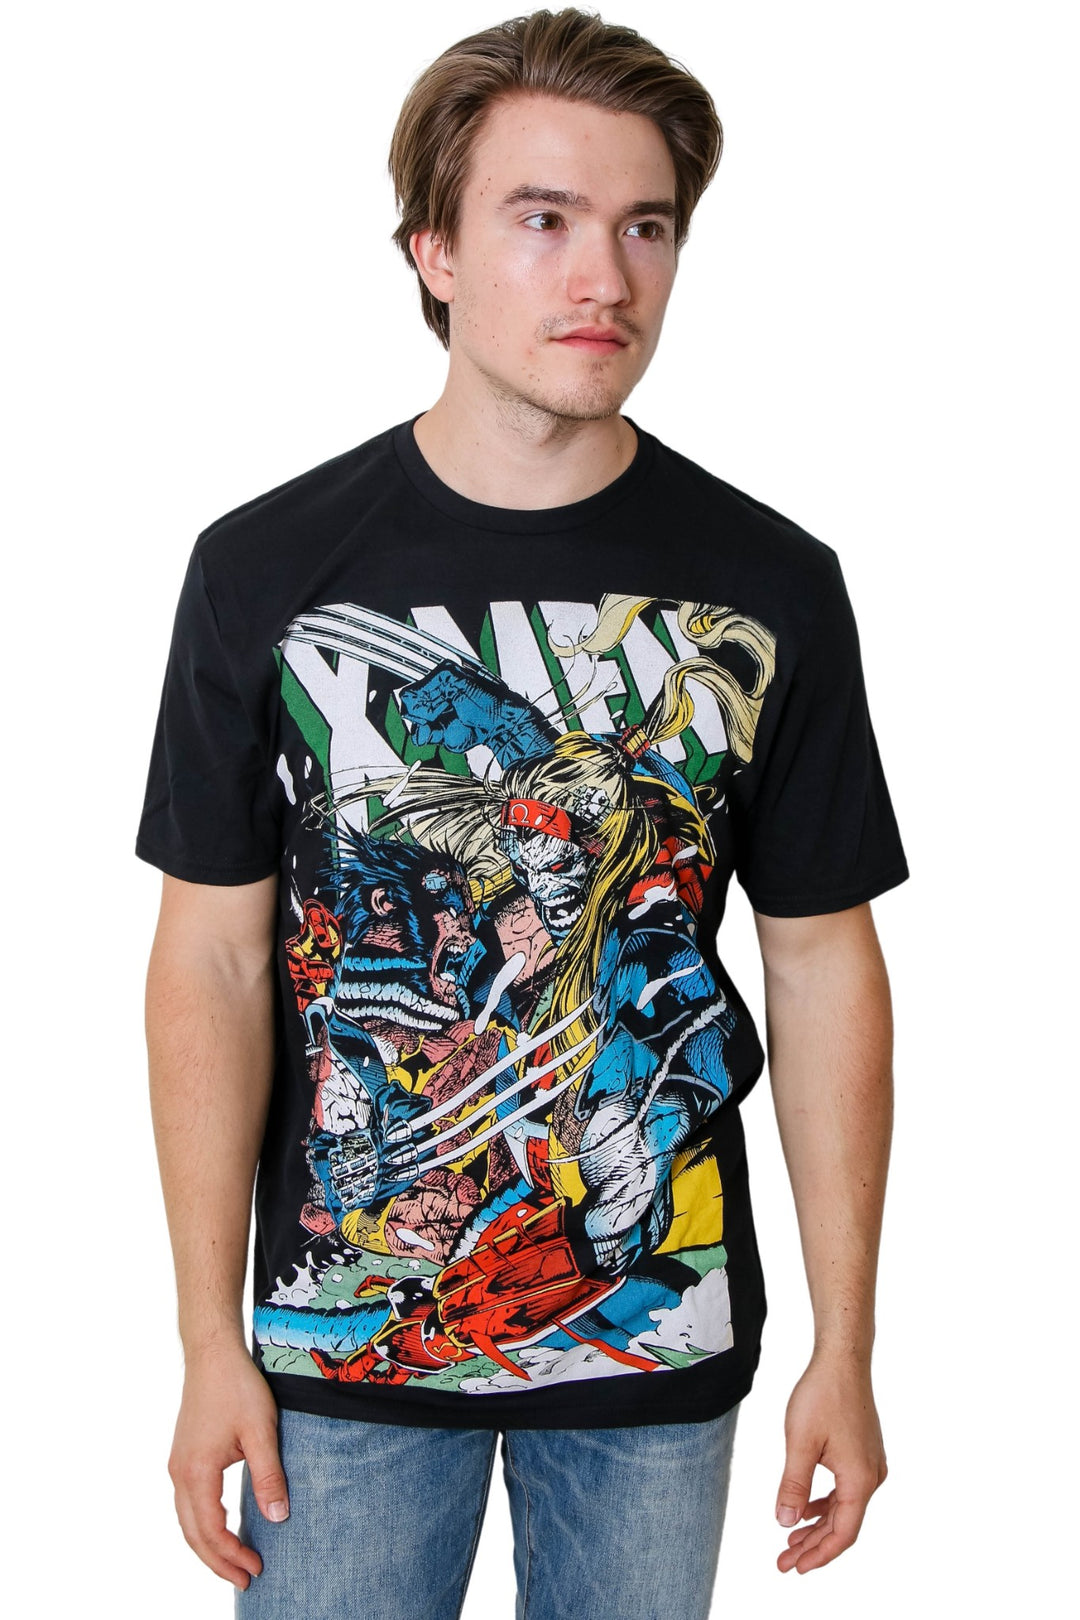 X-Men Wolverine vs Omega Marvel Liscensed Adult T-Shirt YourFavoriteTShirts